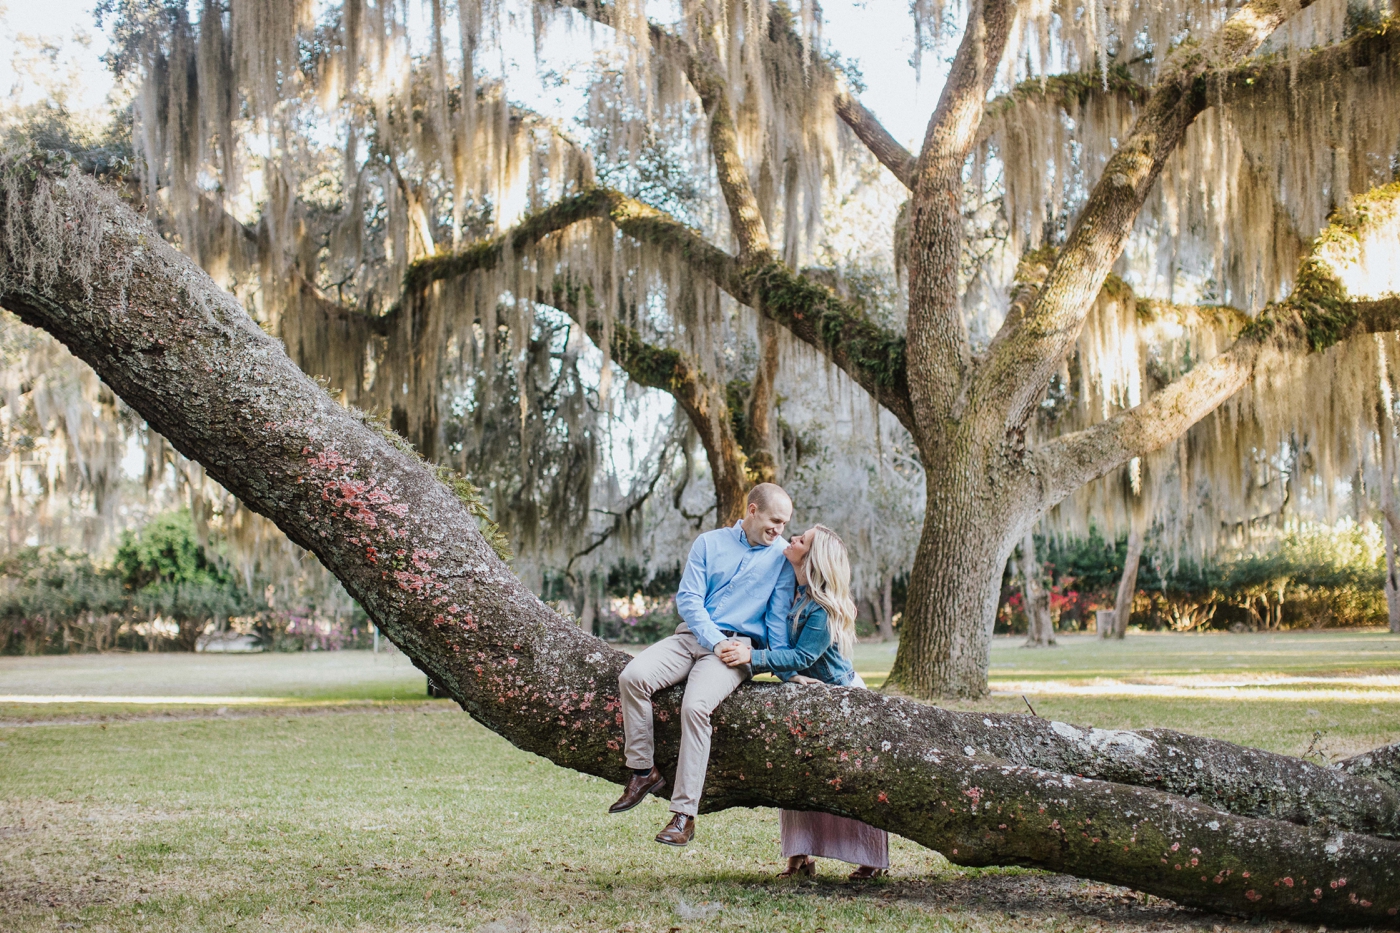 Engagement shoot at historic Beaulieu Plantation, south of Savannah, Georgia